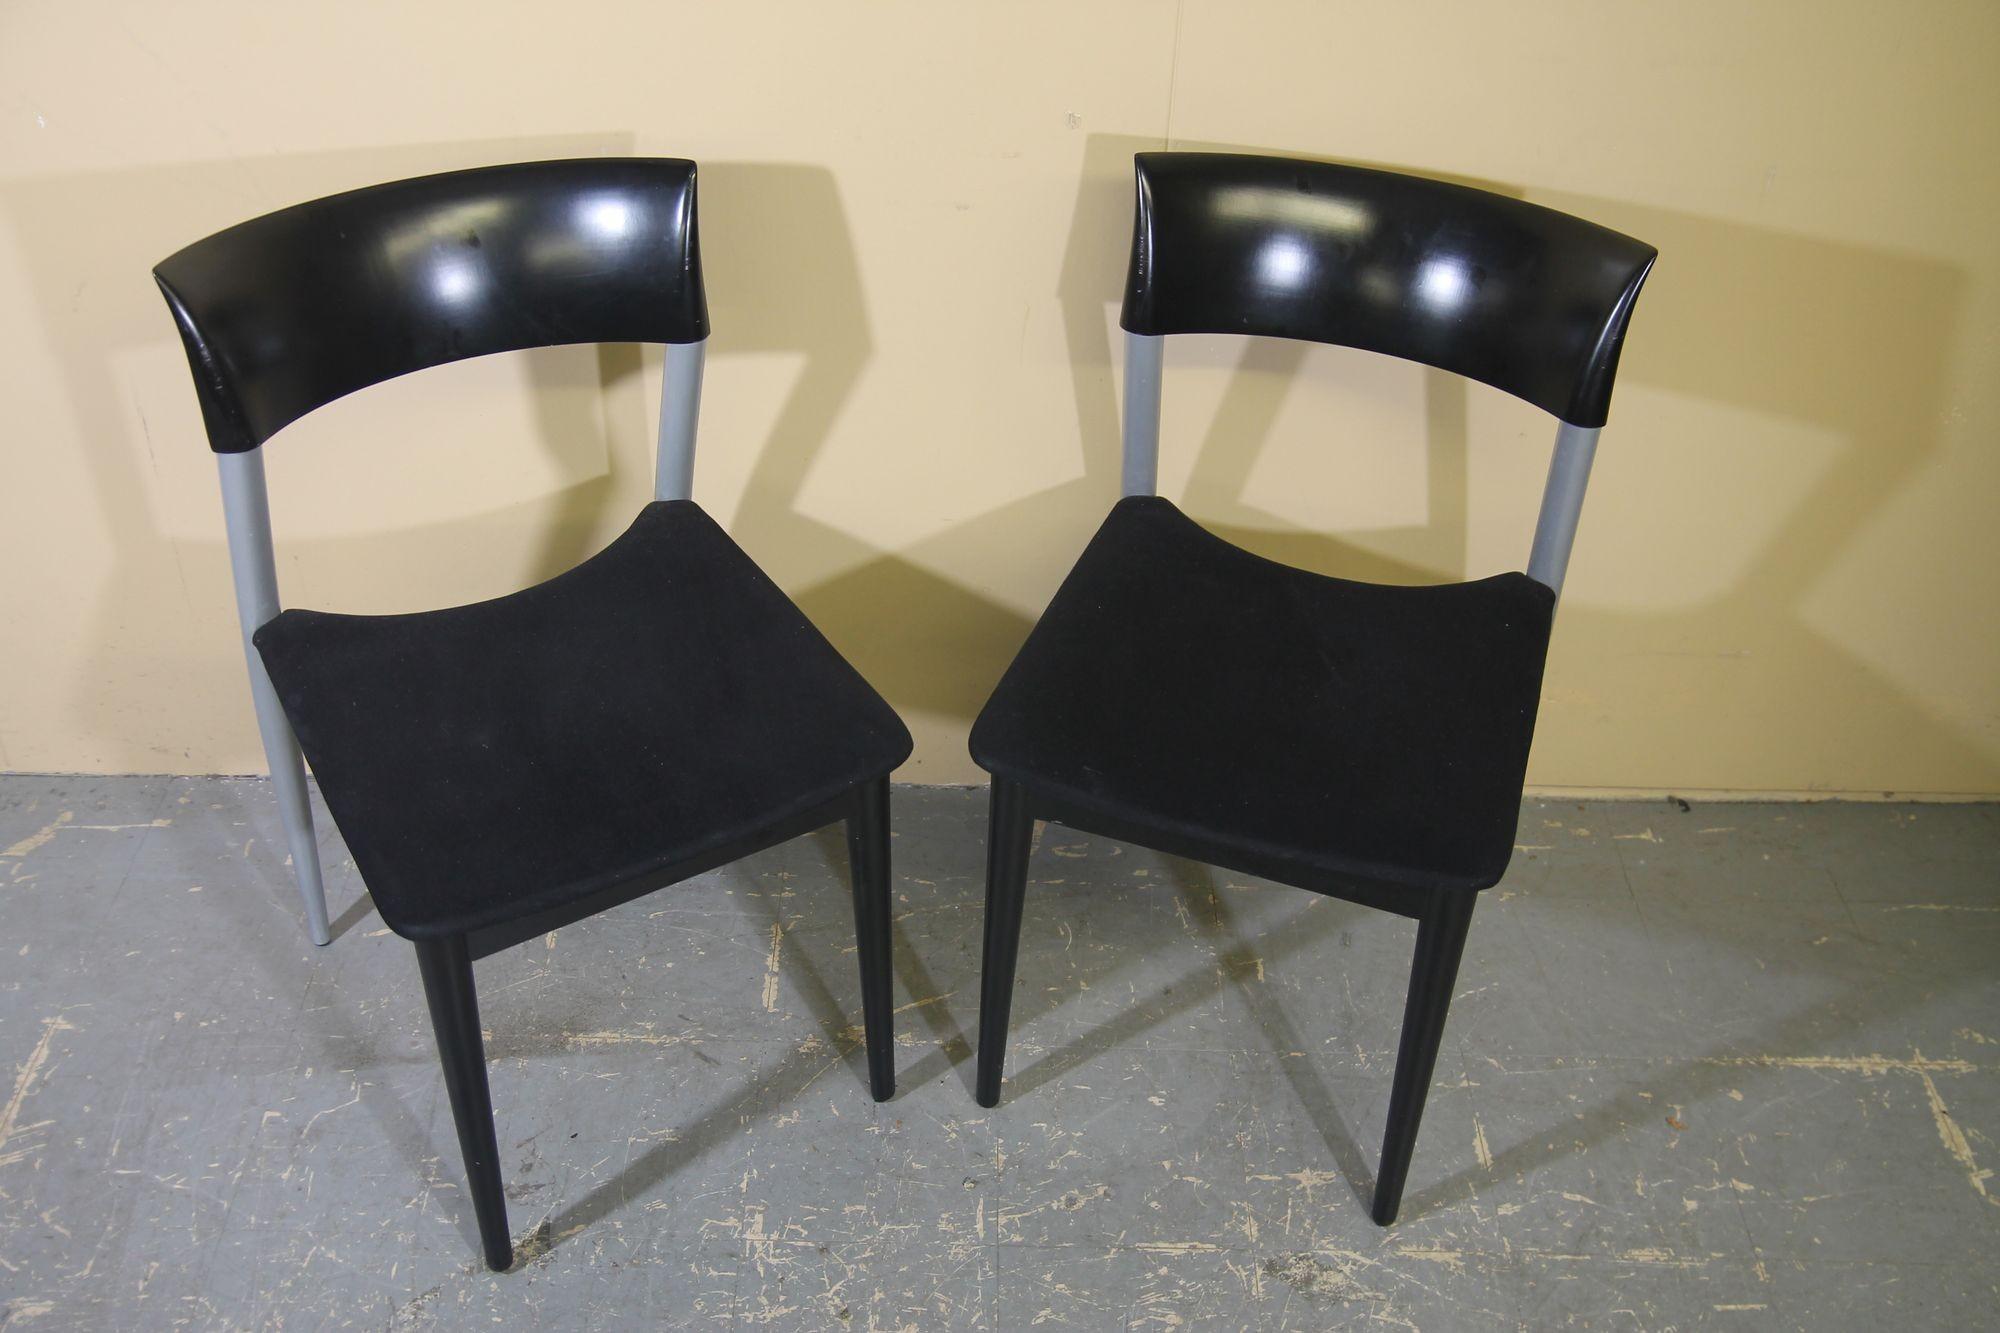 Belle paire de chaises italiennes de Potocco. Ces chaises sont fabriquées en bois, en métal et en tissu. Les chaises sont en bon état. Ces chaises conviendront parfaitement autour d'une petite table ou comme chaises d'appoint.